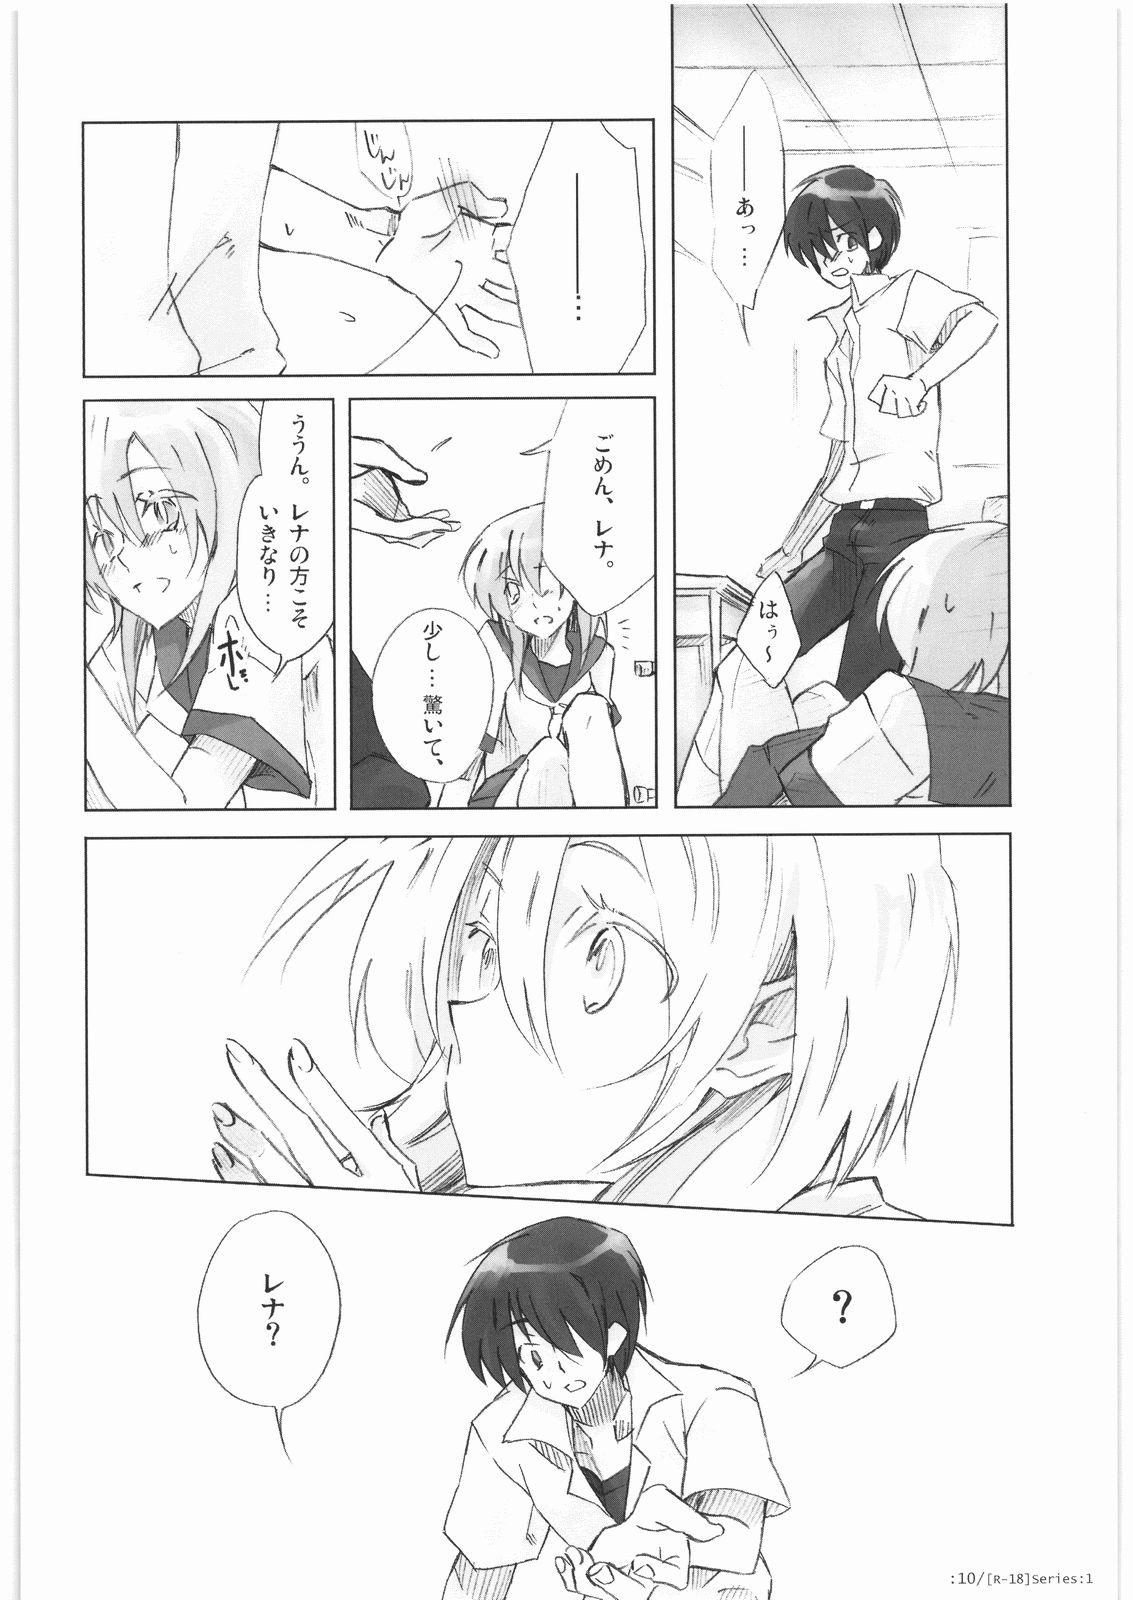 Transsexual R-18 Series:1 - Higurashi no naku koro ni Neighbor - Page 9